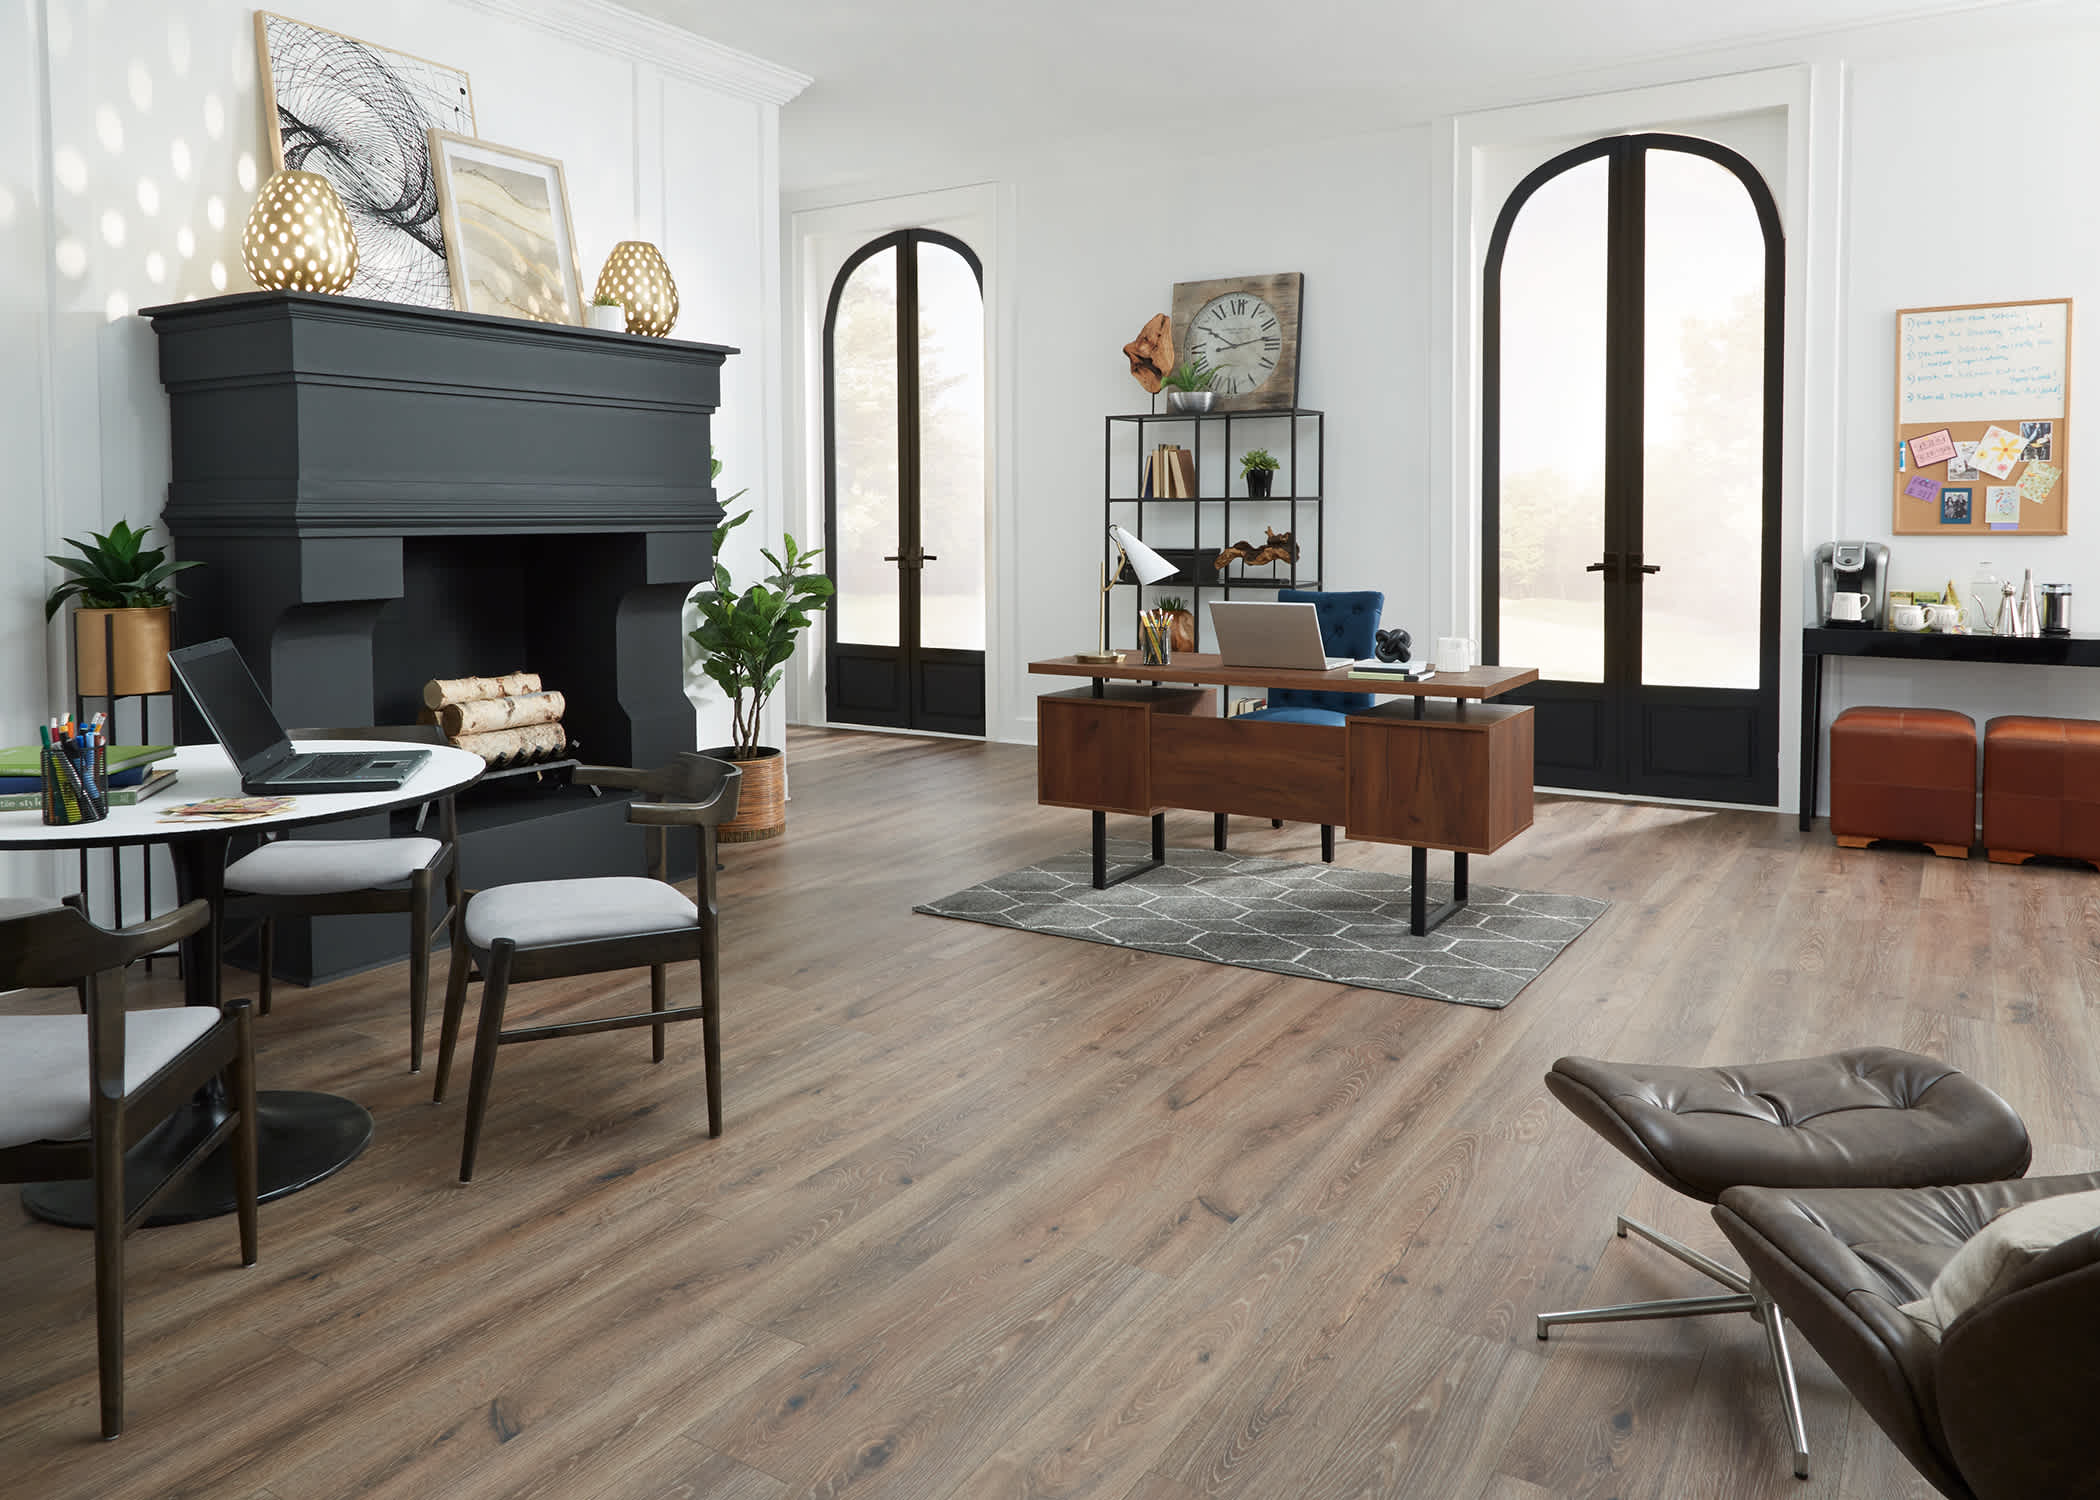 Sagrada Oak Waterproof Hybrid Resilient Flooring installed in a living room.